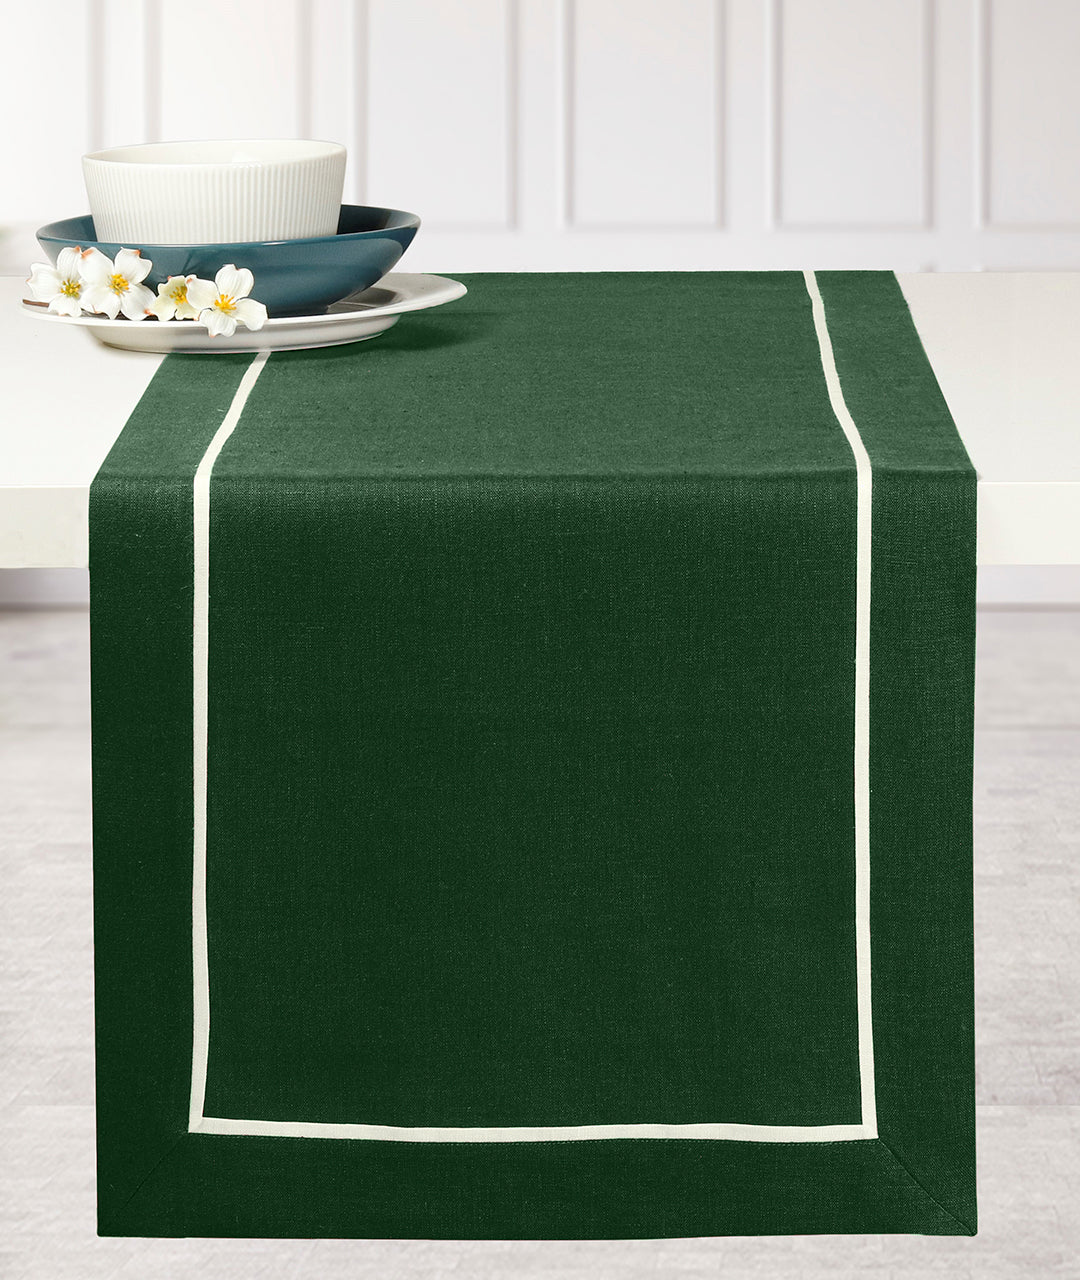 Eden Green & White Linen Table Runner - Reversible